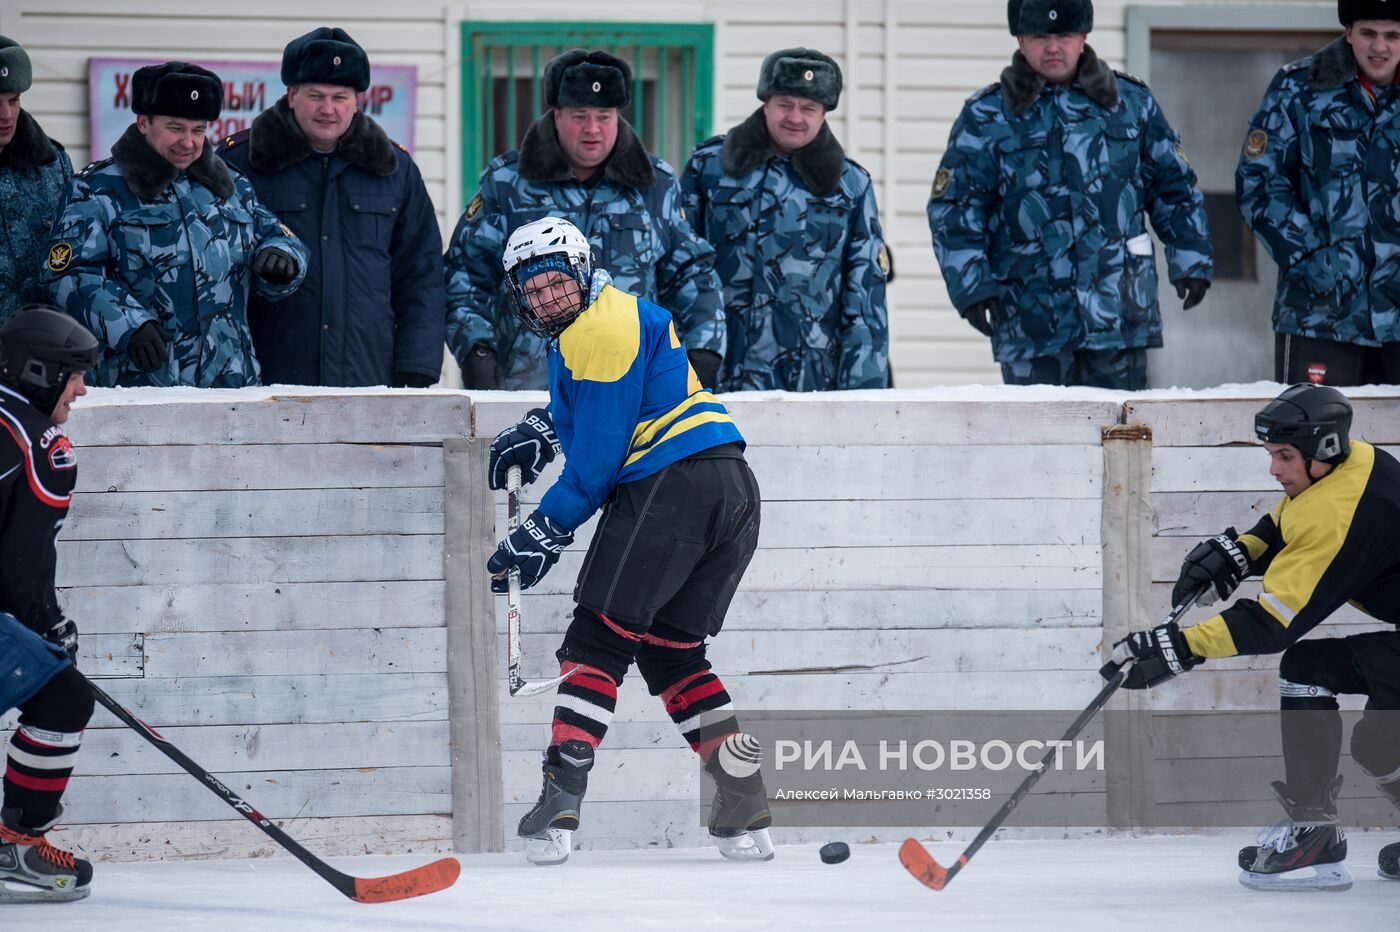 Хоккей в исправительной колонии Омска